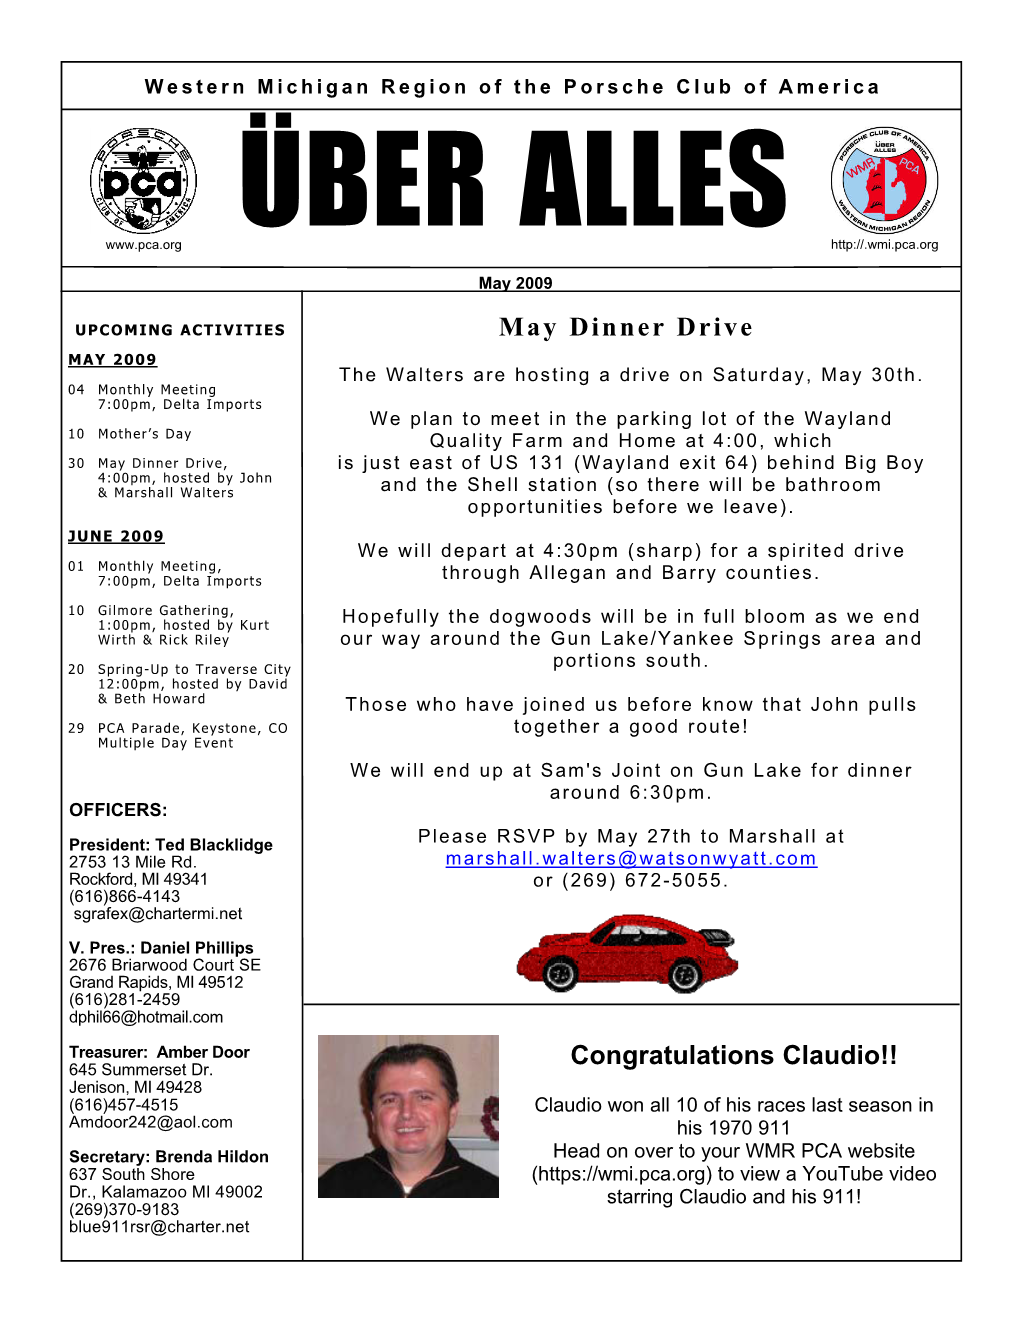 May 2009 Uber